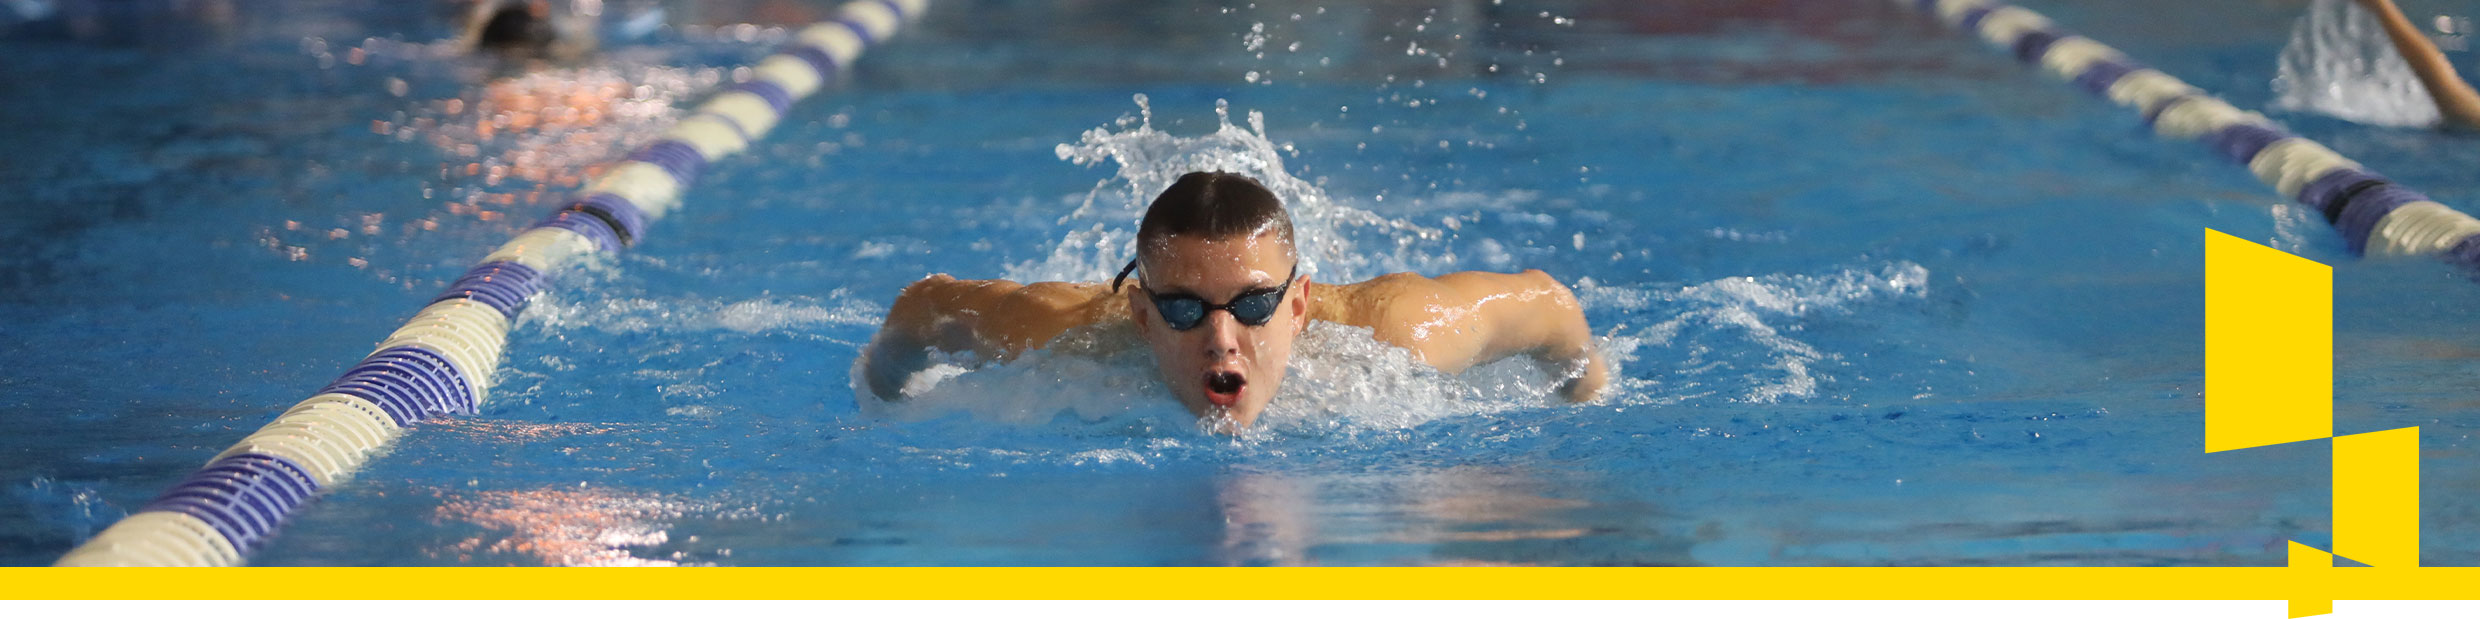 Zdjęcie ukazuje płynącego w basenie młodego chłopaka z okularami pływackimi na oczach.